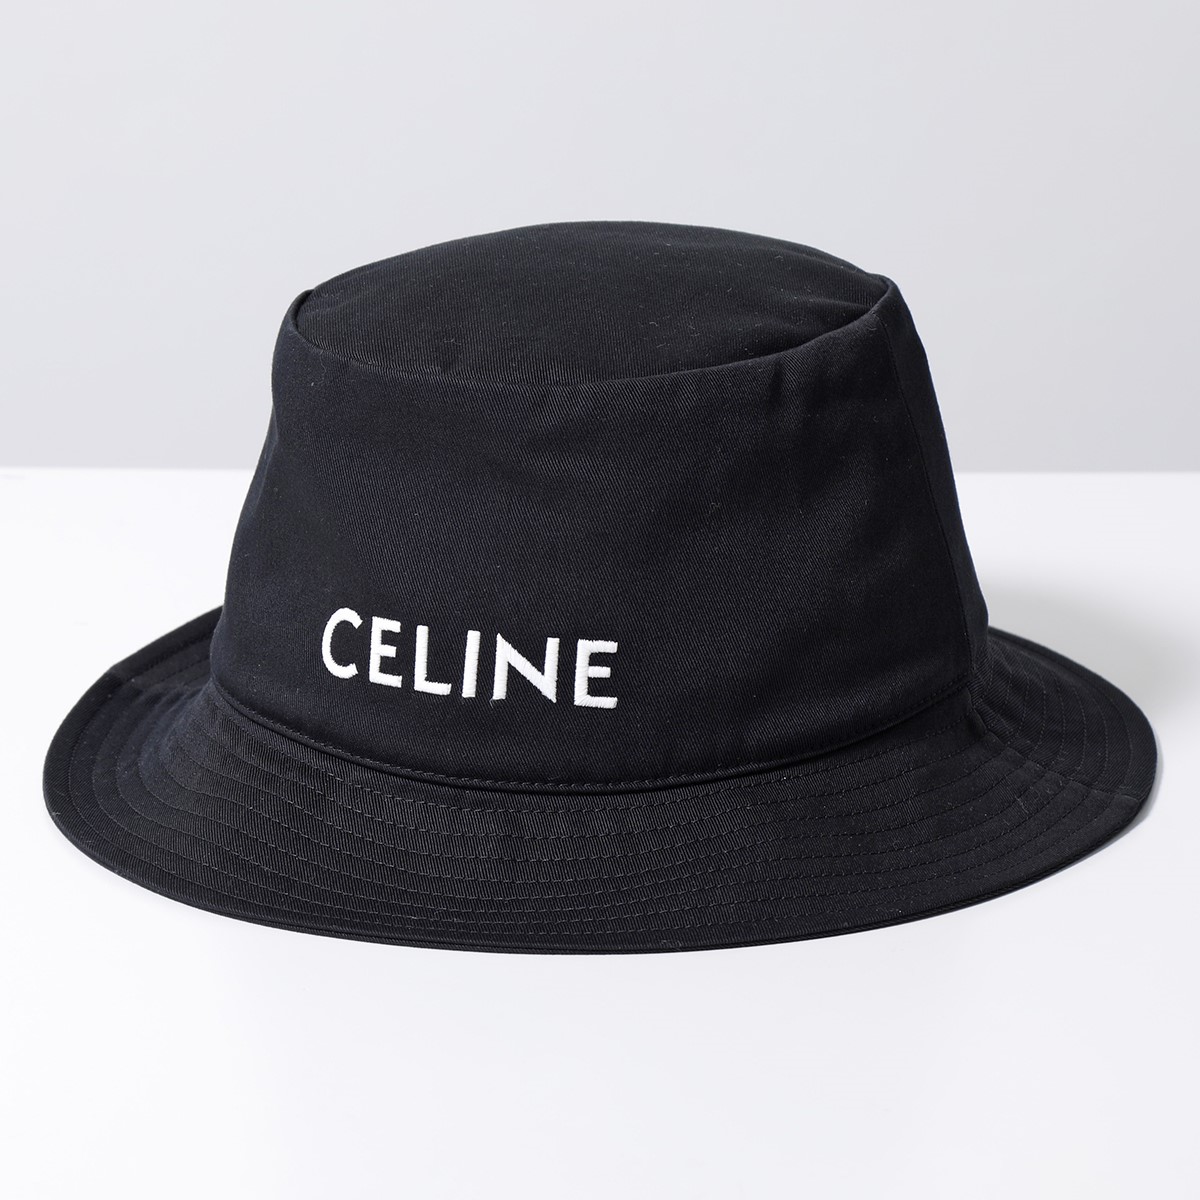 CELINE セリーヌ バケットハット 2AUO4968P.38UB メンズ コットン ロゴ刺繍 帽子 ブラック | インポートセレクト musee